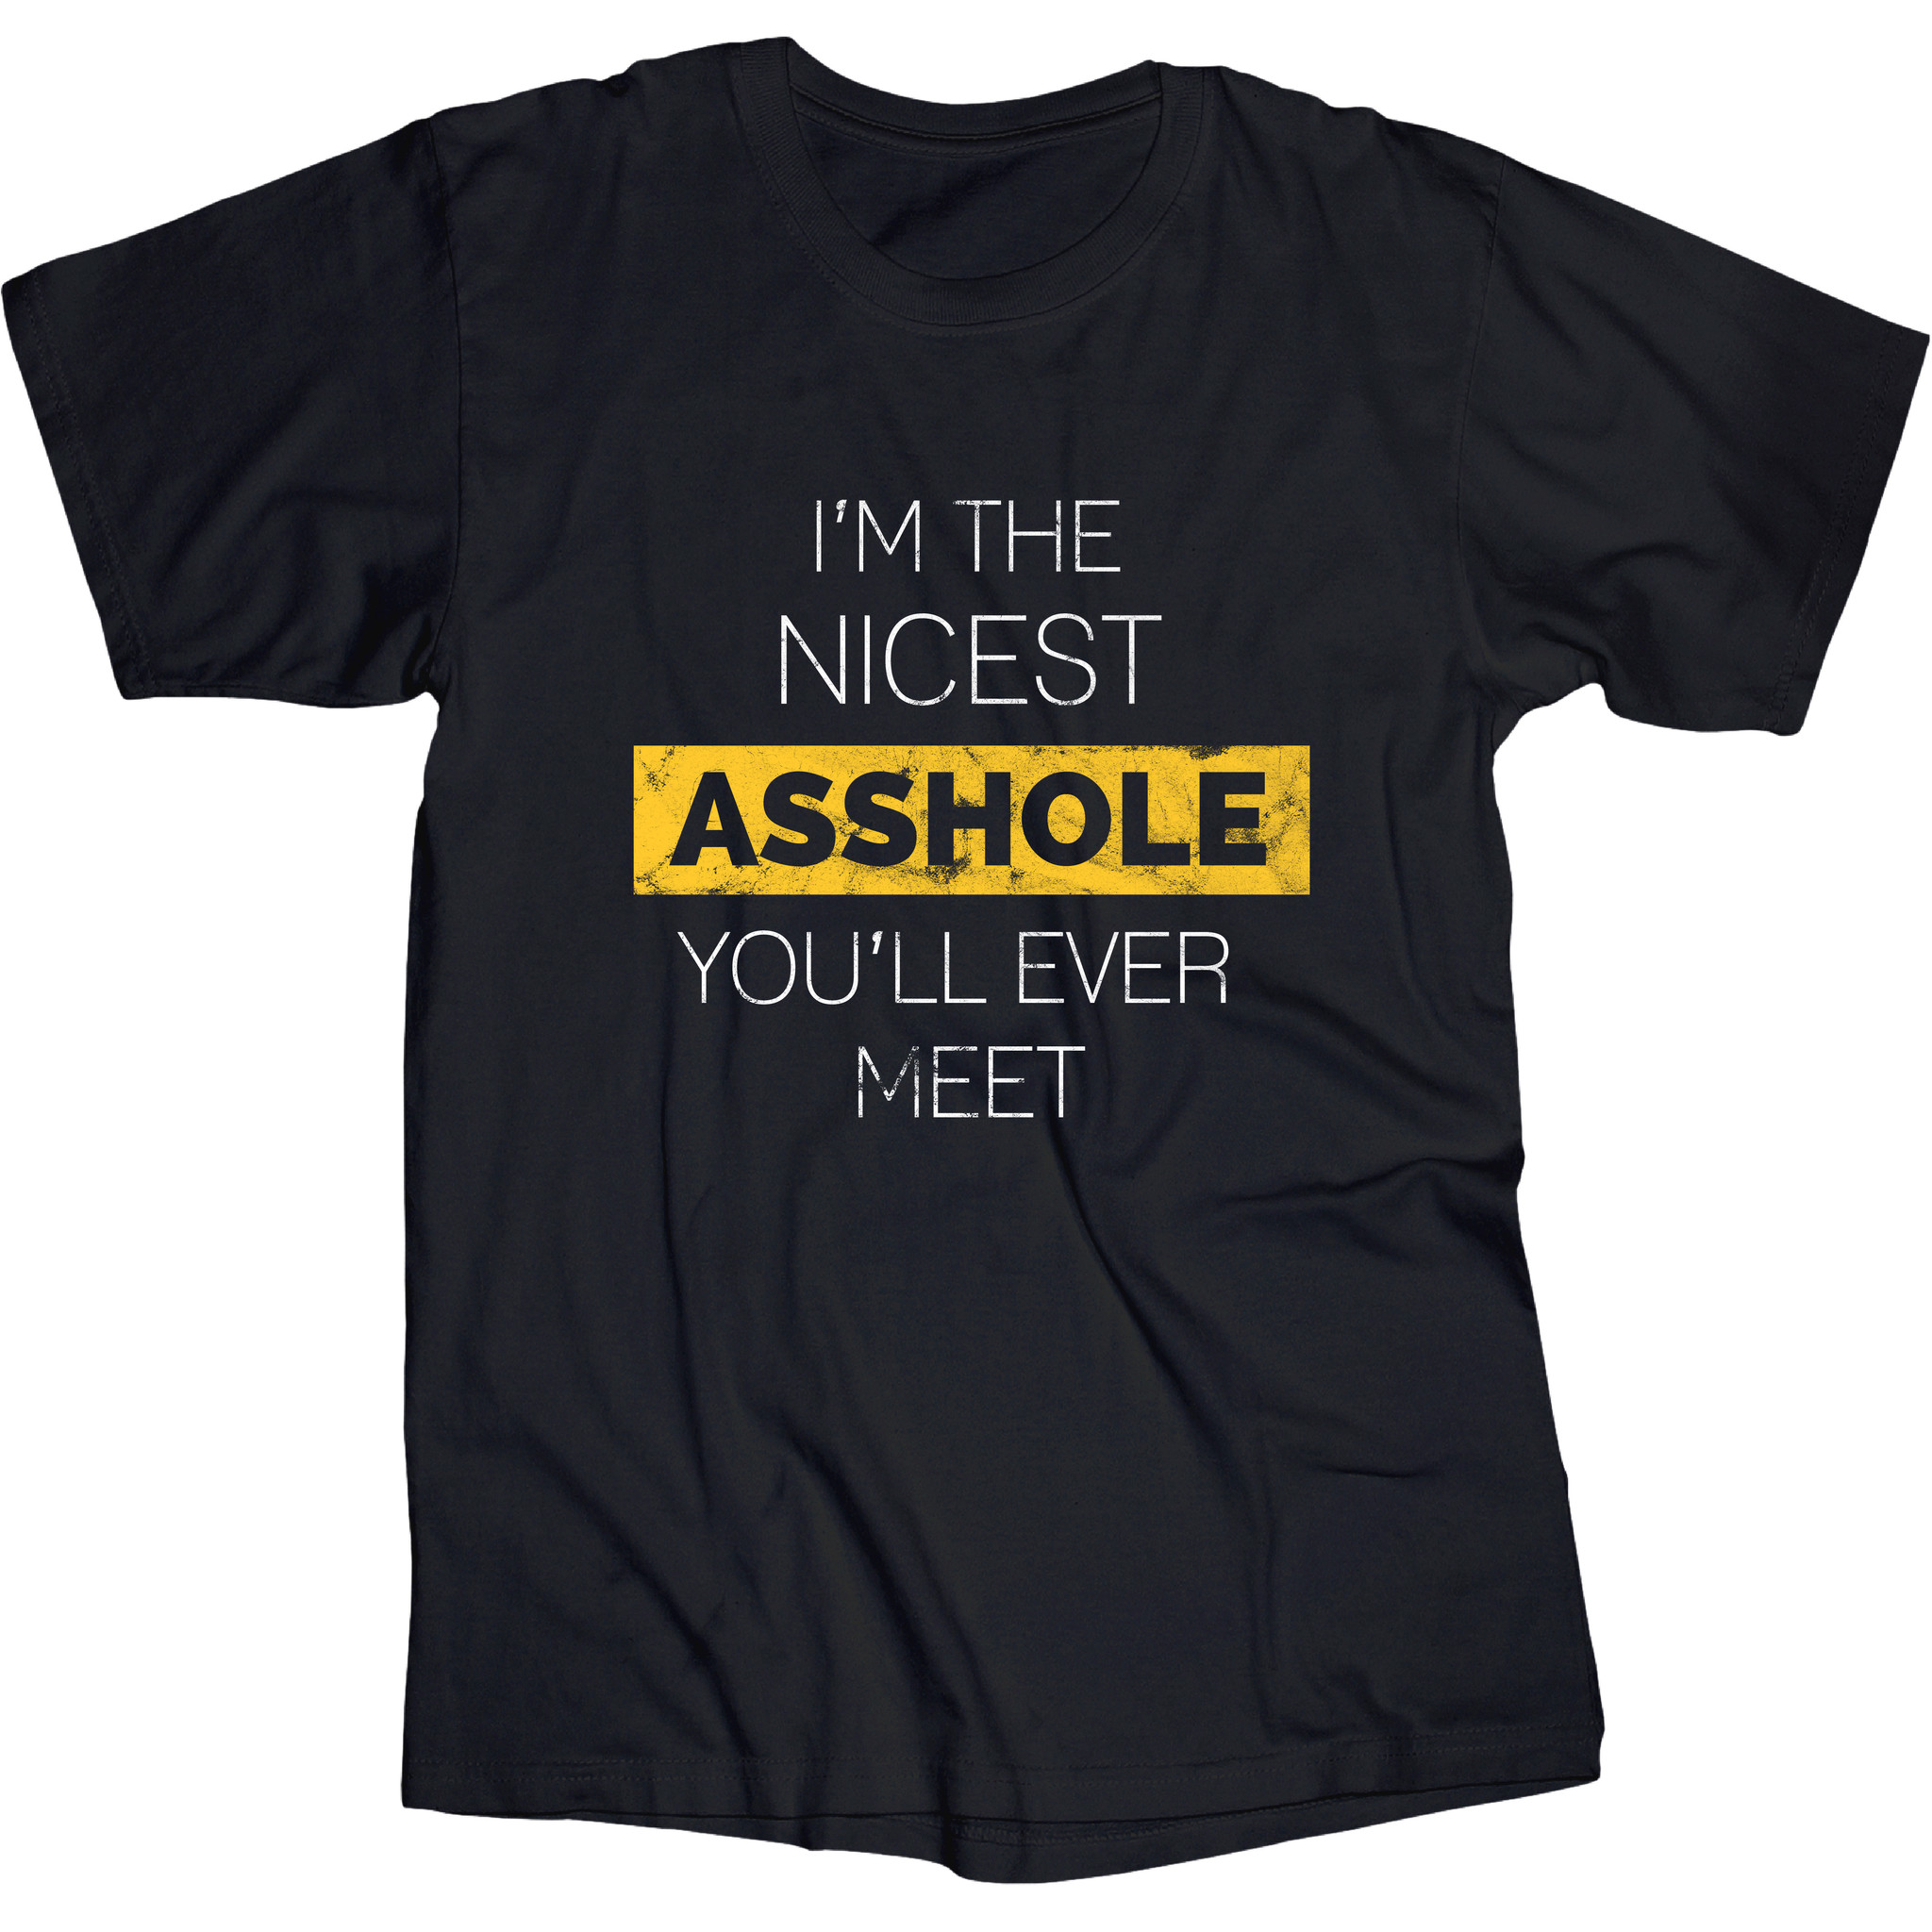 Nicest Asshole T shirt